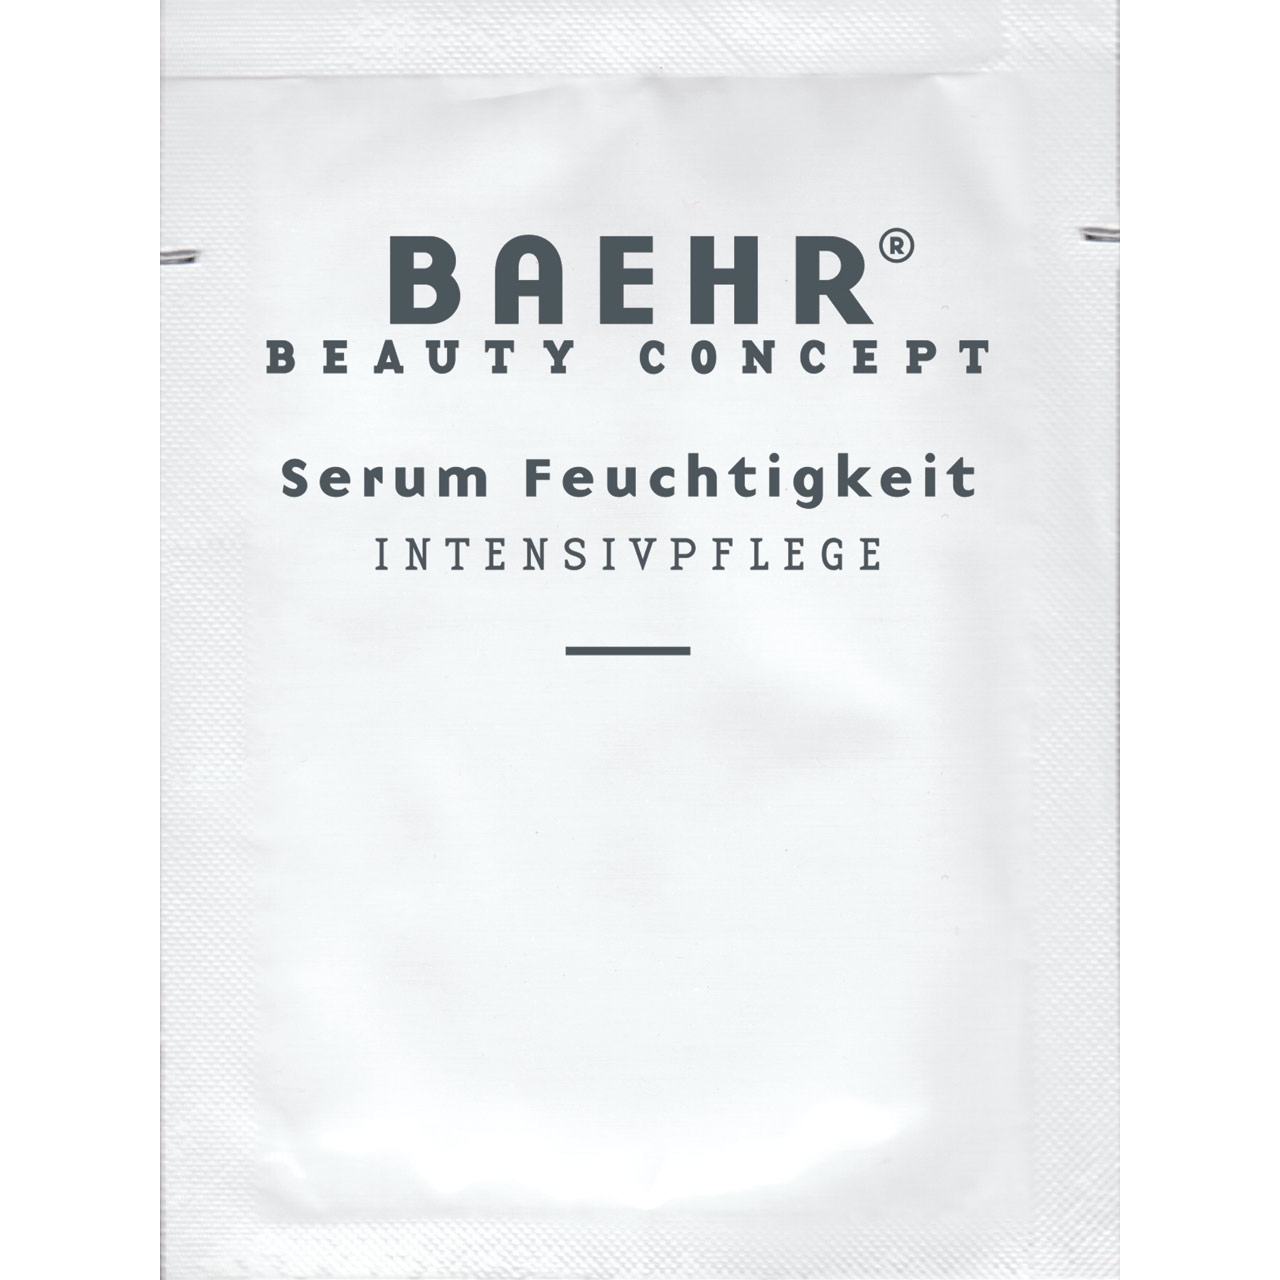 BAEHR BEAUTY CONCEPT - Serum Feuchtigkeit, Probe, 1 Stk.